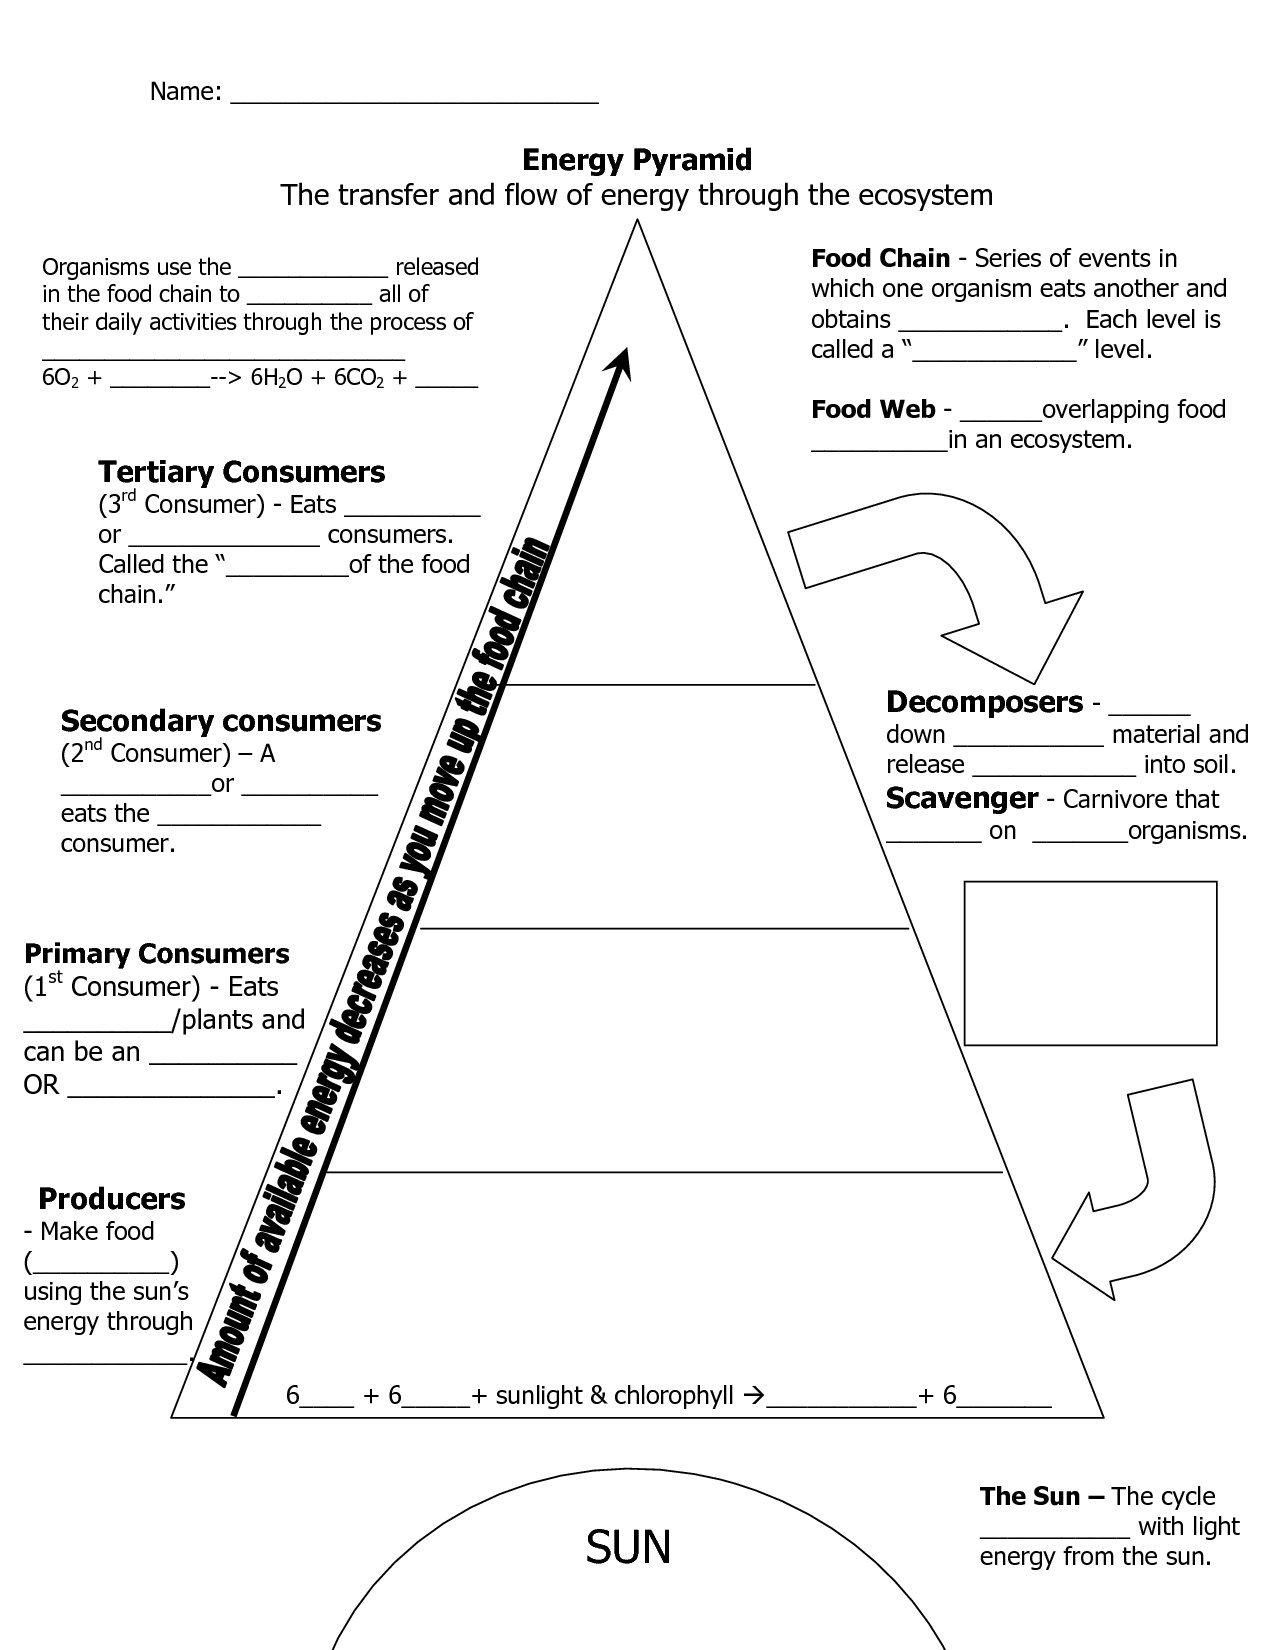 Ecosystem Organization Pyramid Worksheet Image